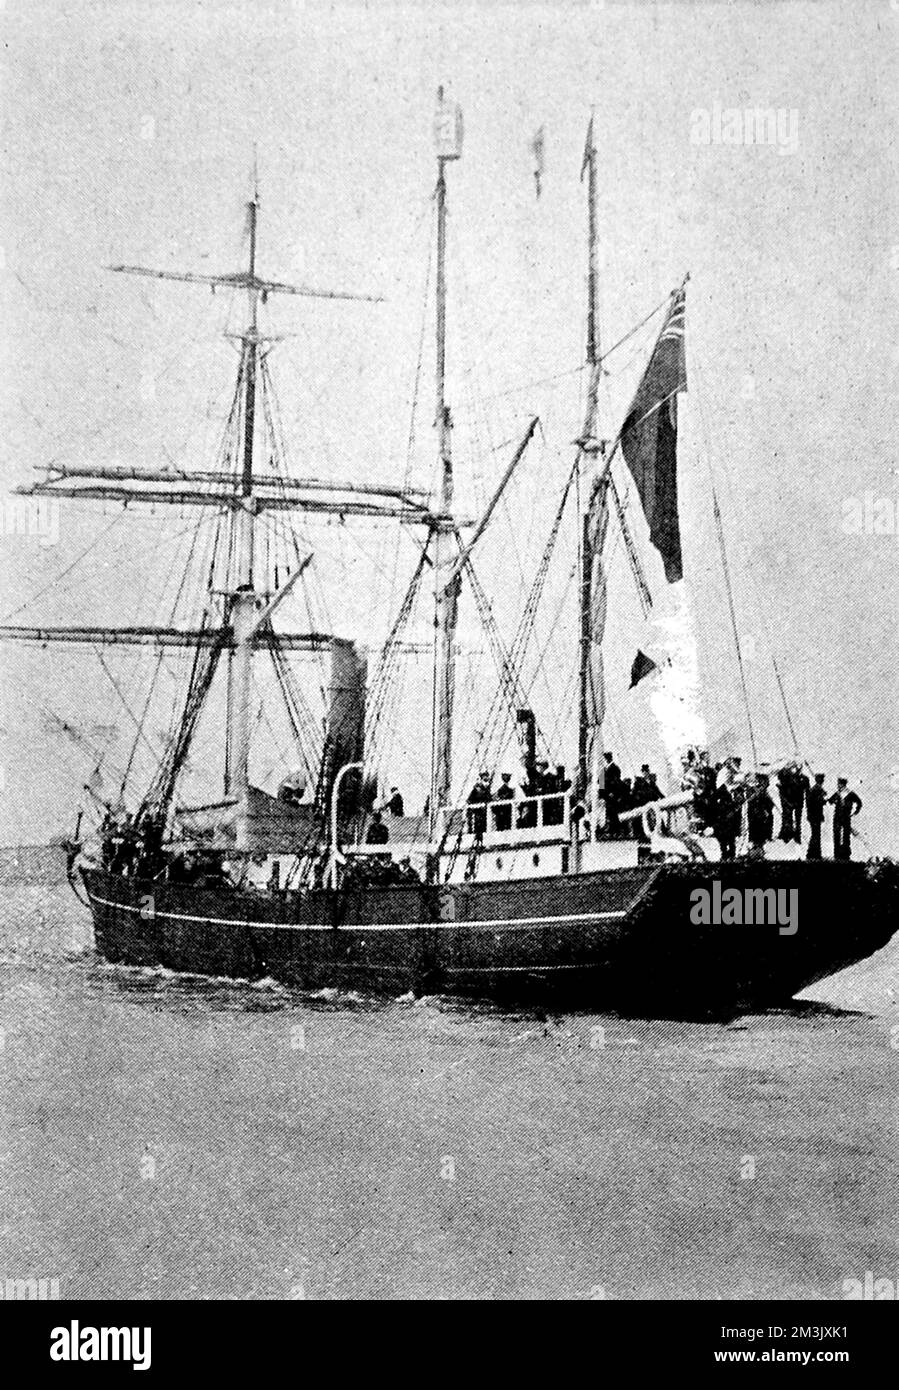 Das Foto zeigt das „Nimrod“, das Polarforschungsschiff, das bei der Nimrod-Antarktis-Expedition von 1908-09 verwendet wurde und 1909 nach Großbritannien zurückkehrte. Der „Nimrod“ mit 227 Tonnen wurde früher als Neufundland-walfänger eingesetzt. Datum: 1909 Stockfoto